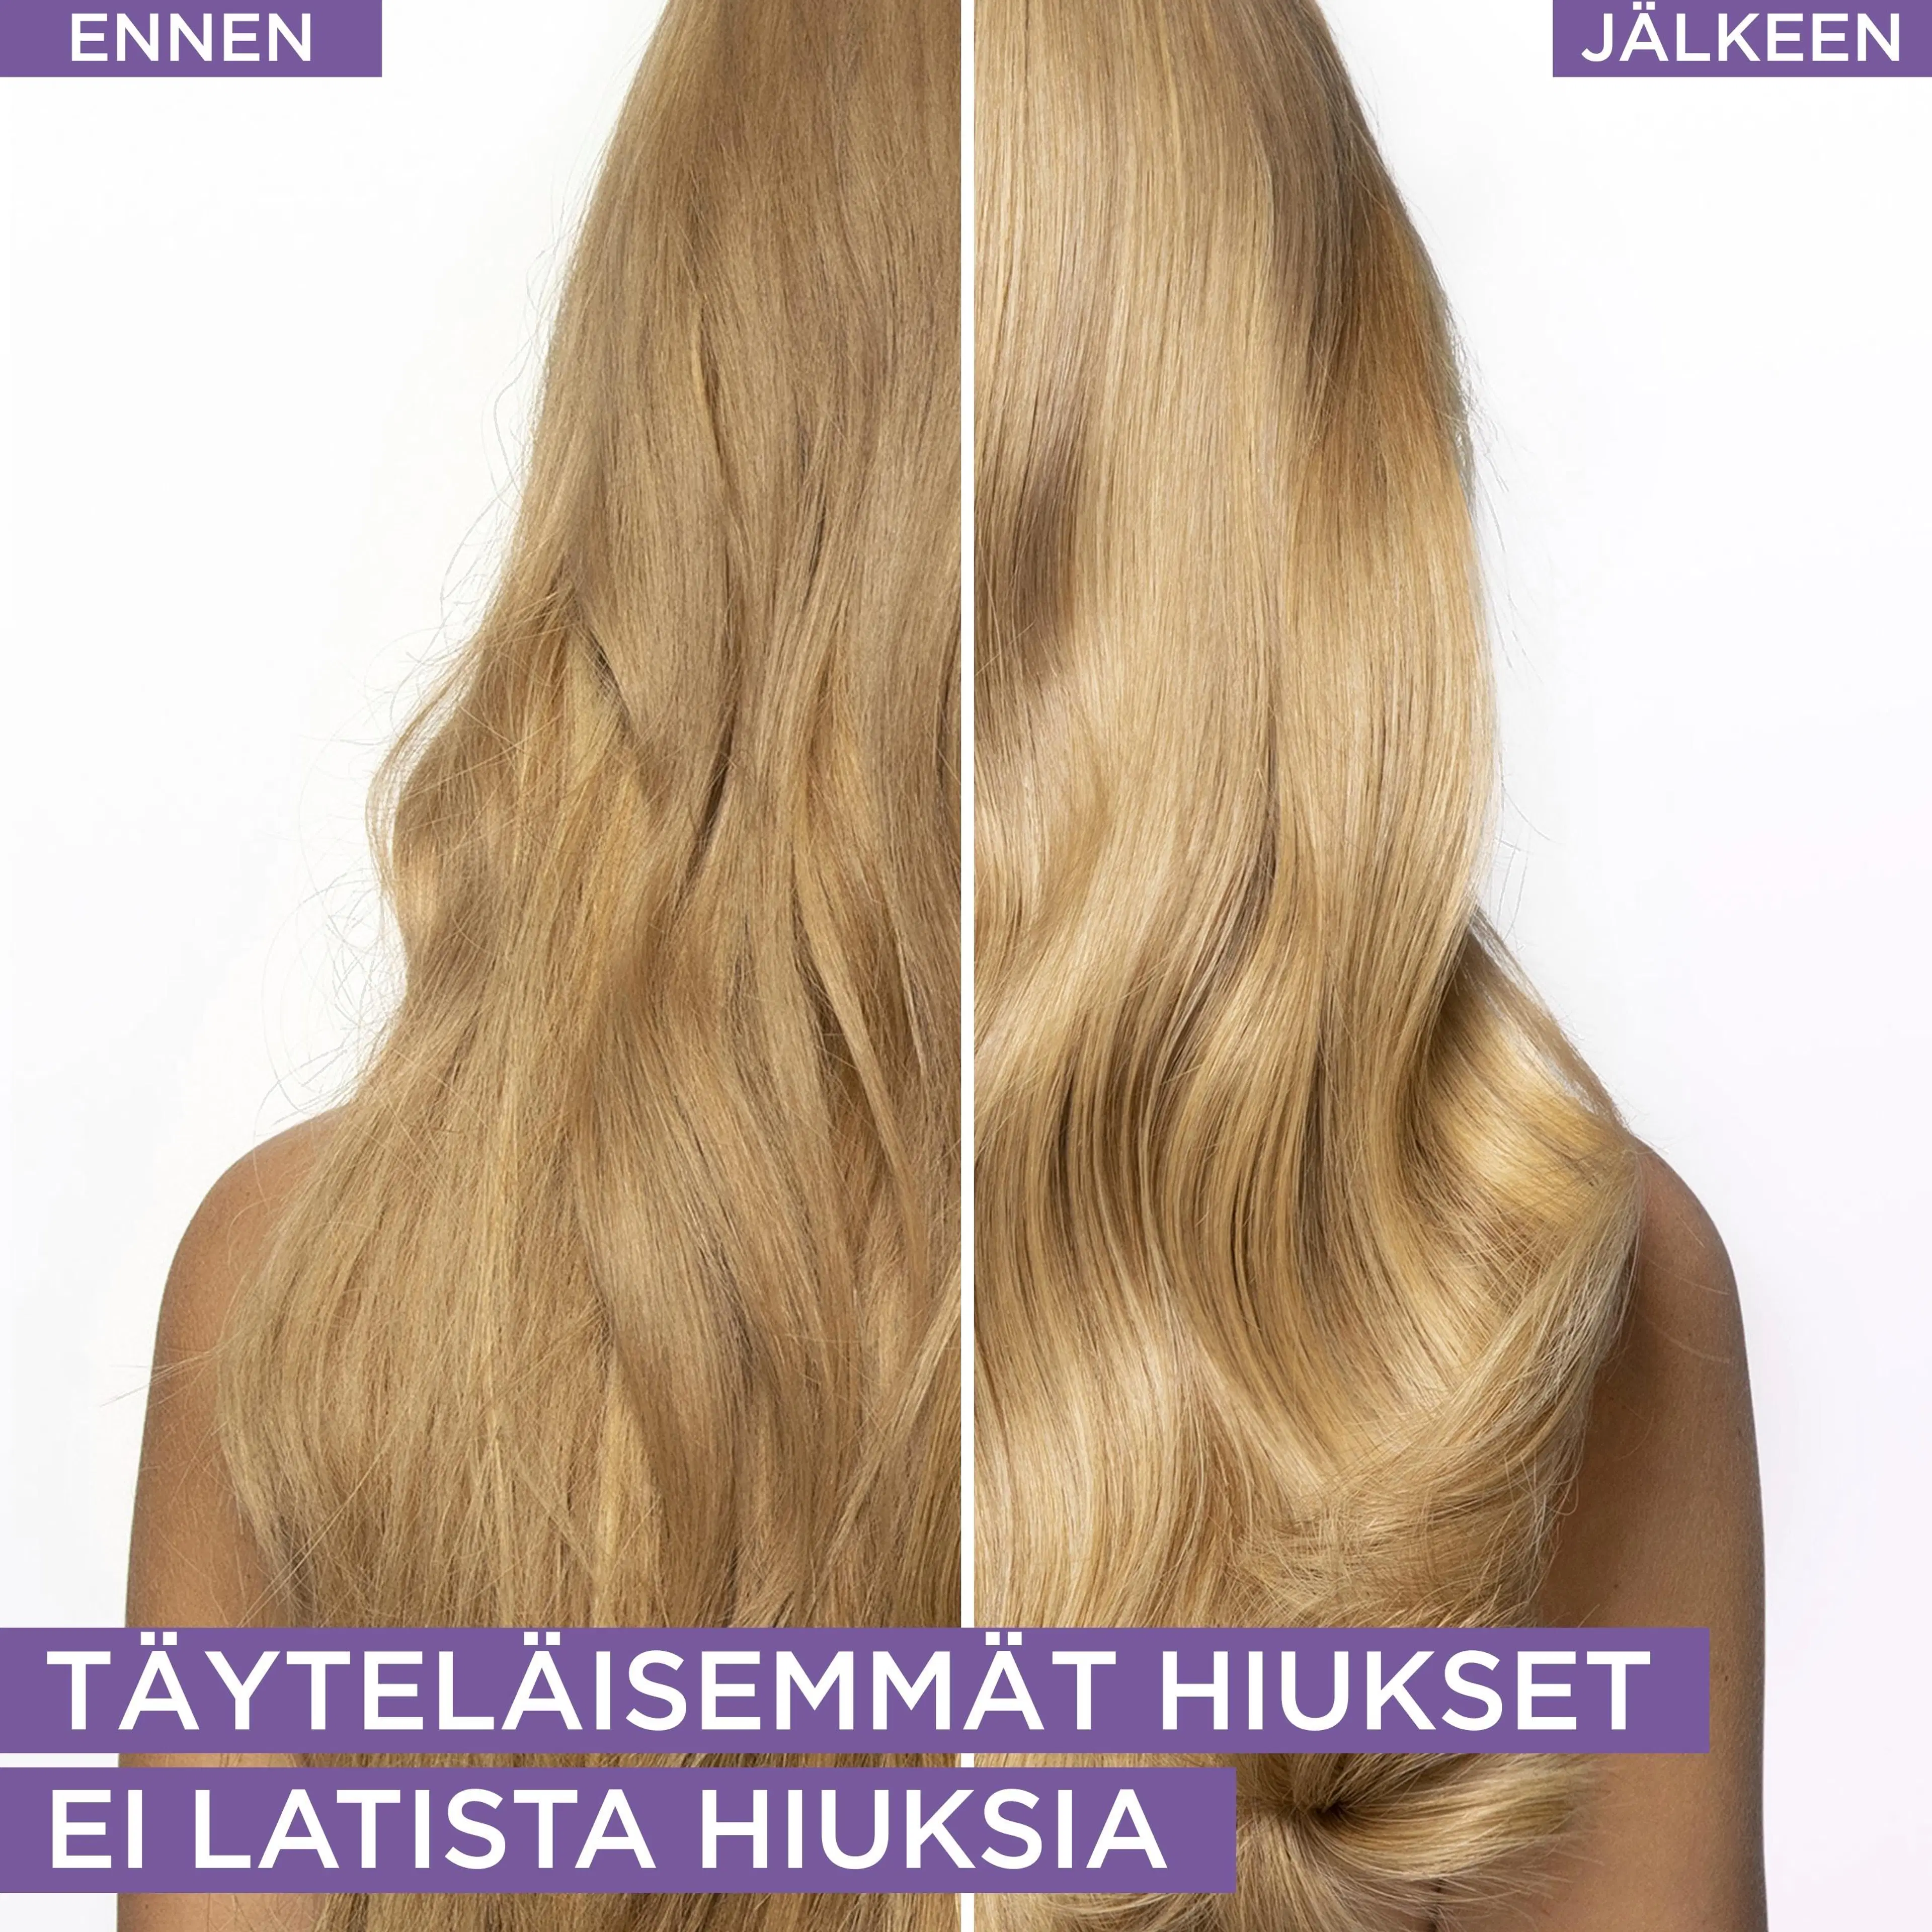 L'Oréal Paris Elvital Hyaluron Plump hiusseerumi kosteutta kaipaaville hiuksille 150ml